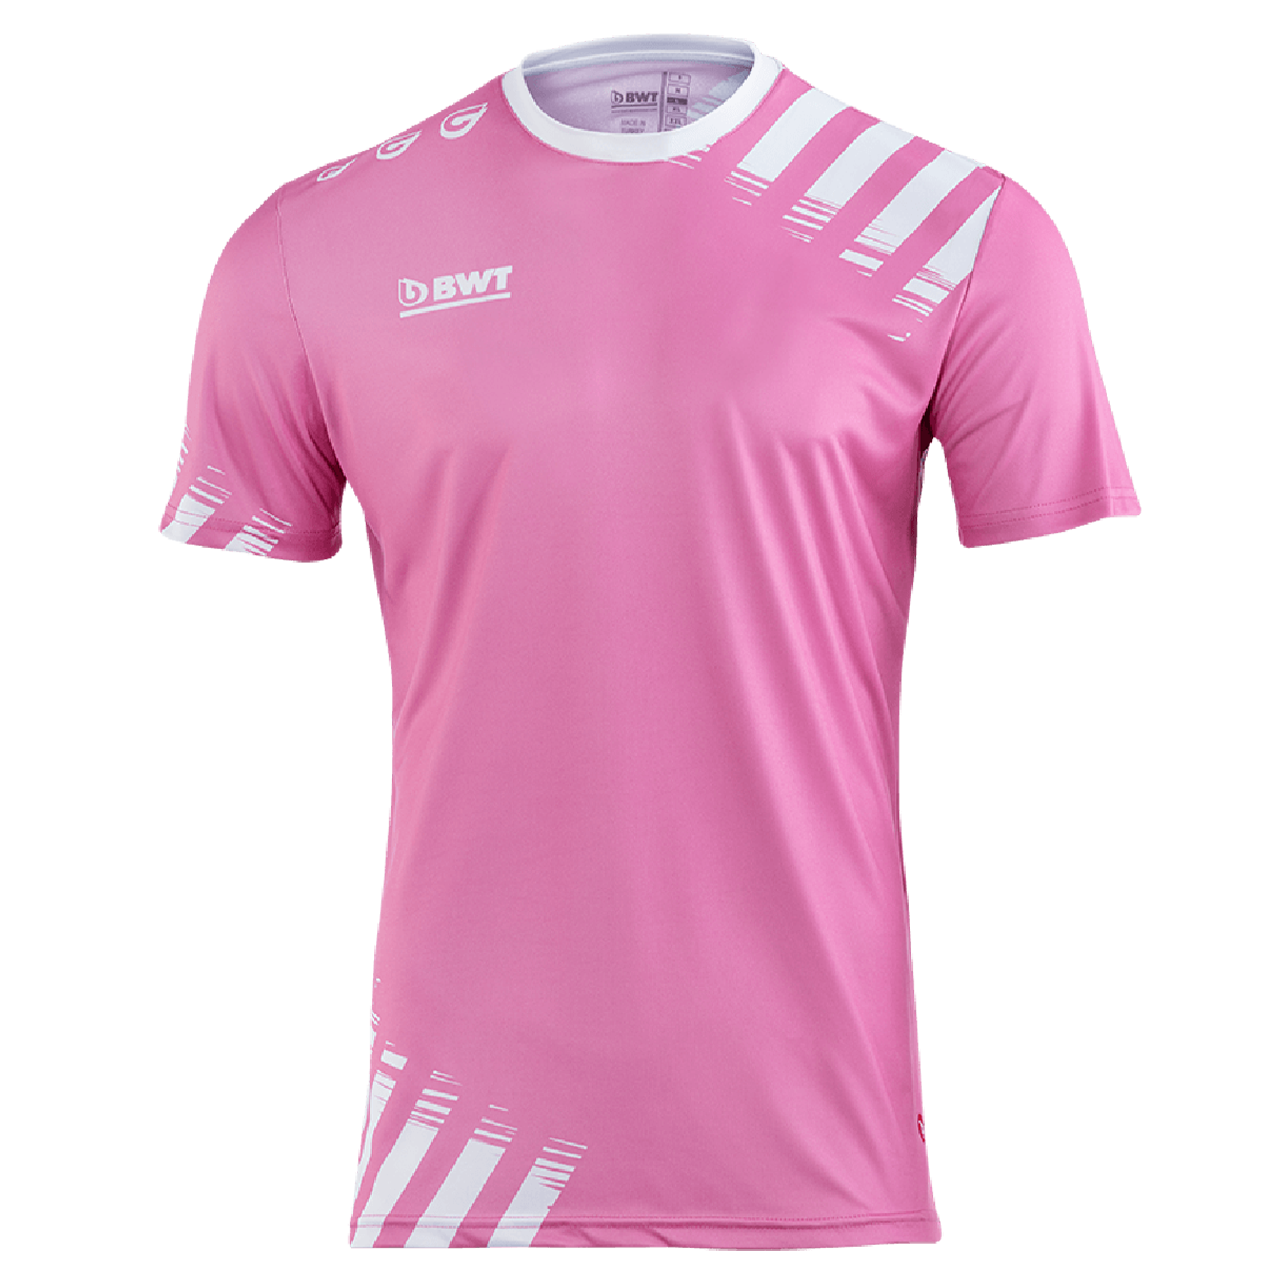 BWT One Football Shirt T-Shirt Pink Front